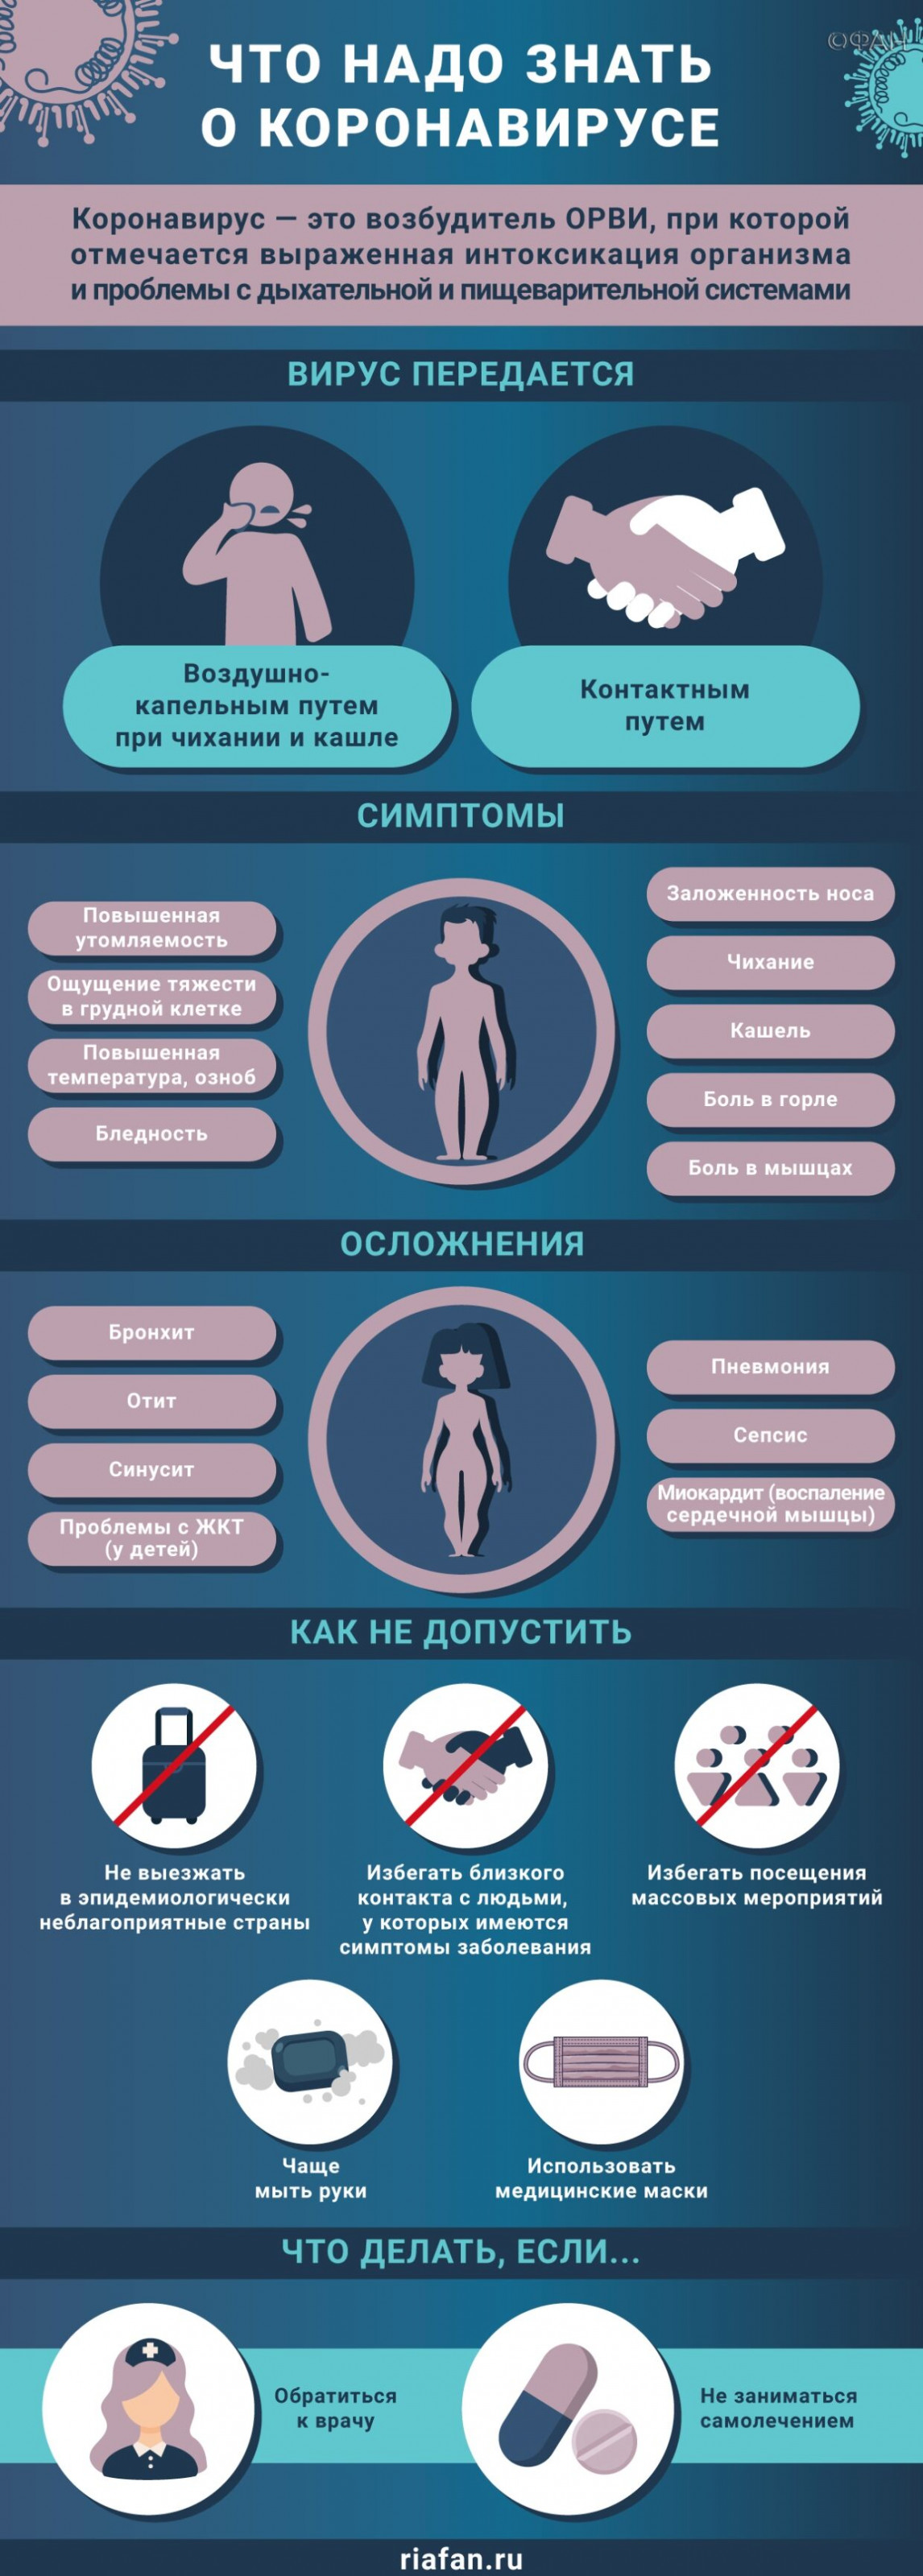 В Москве за сутки выздоровели еще 2066 пациентов с коронавирусом